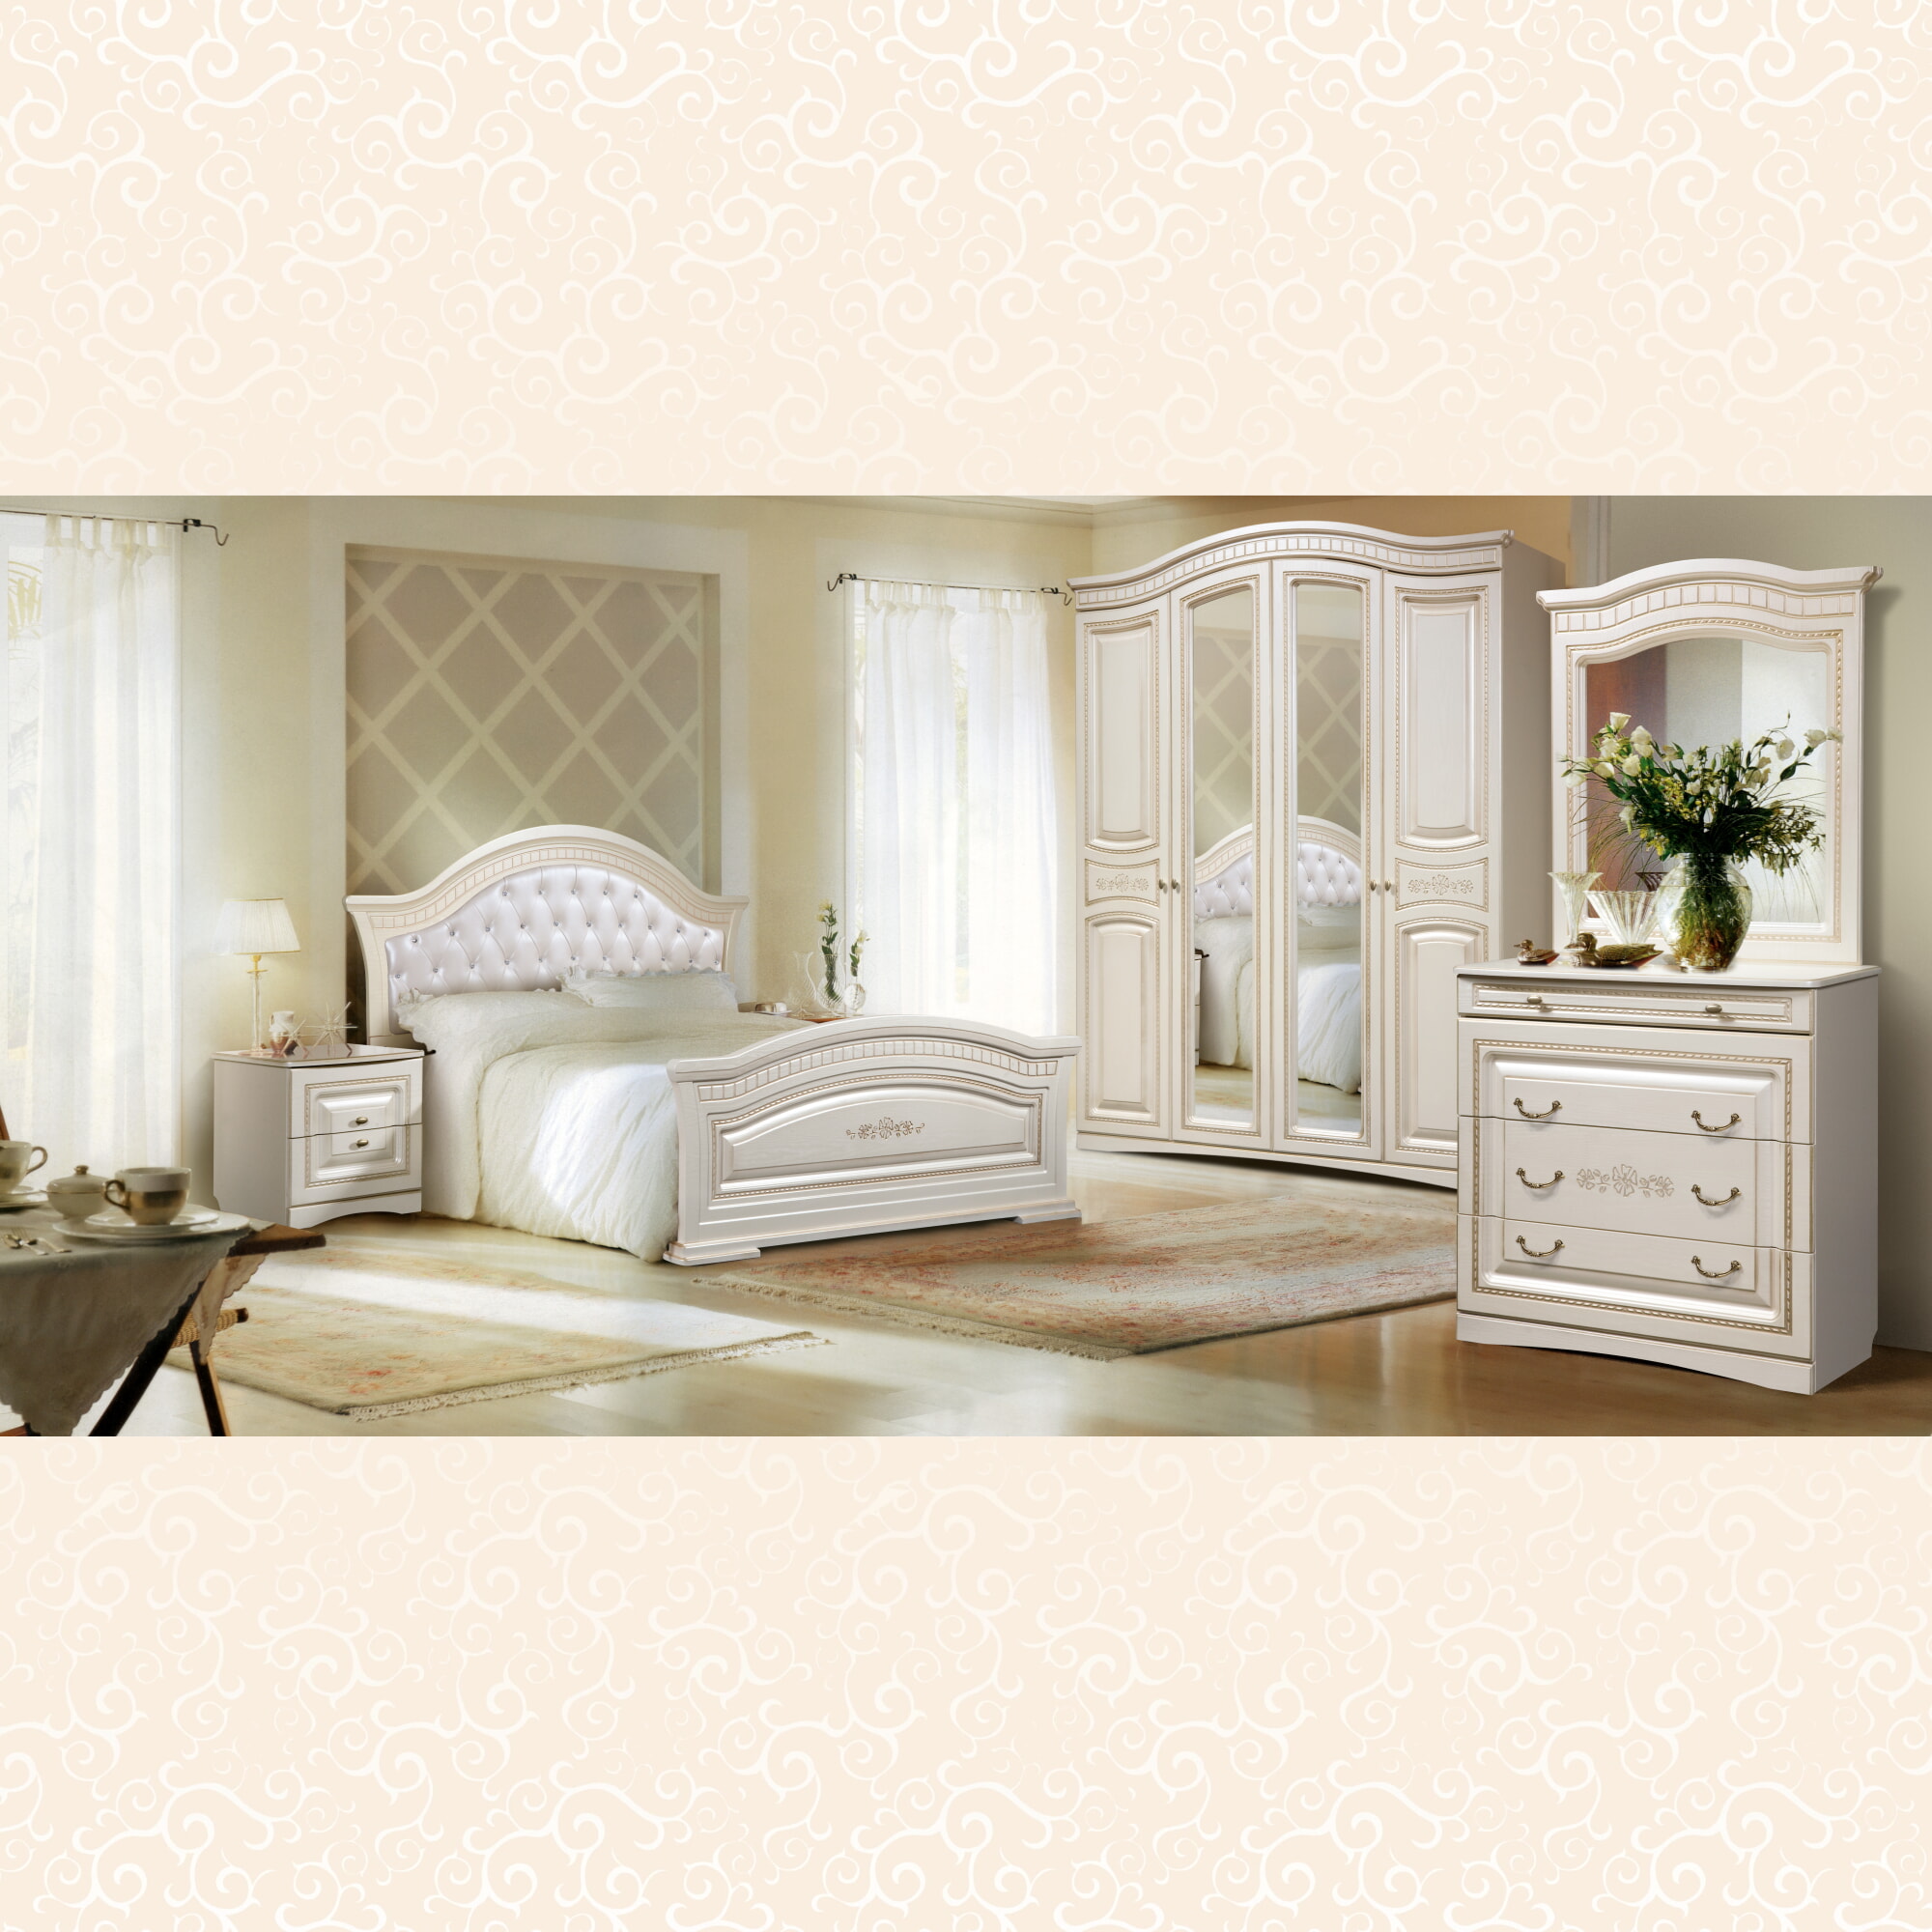 Спальня Венера (Цвет: белый) шкаф 4-дв.  Бежевый